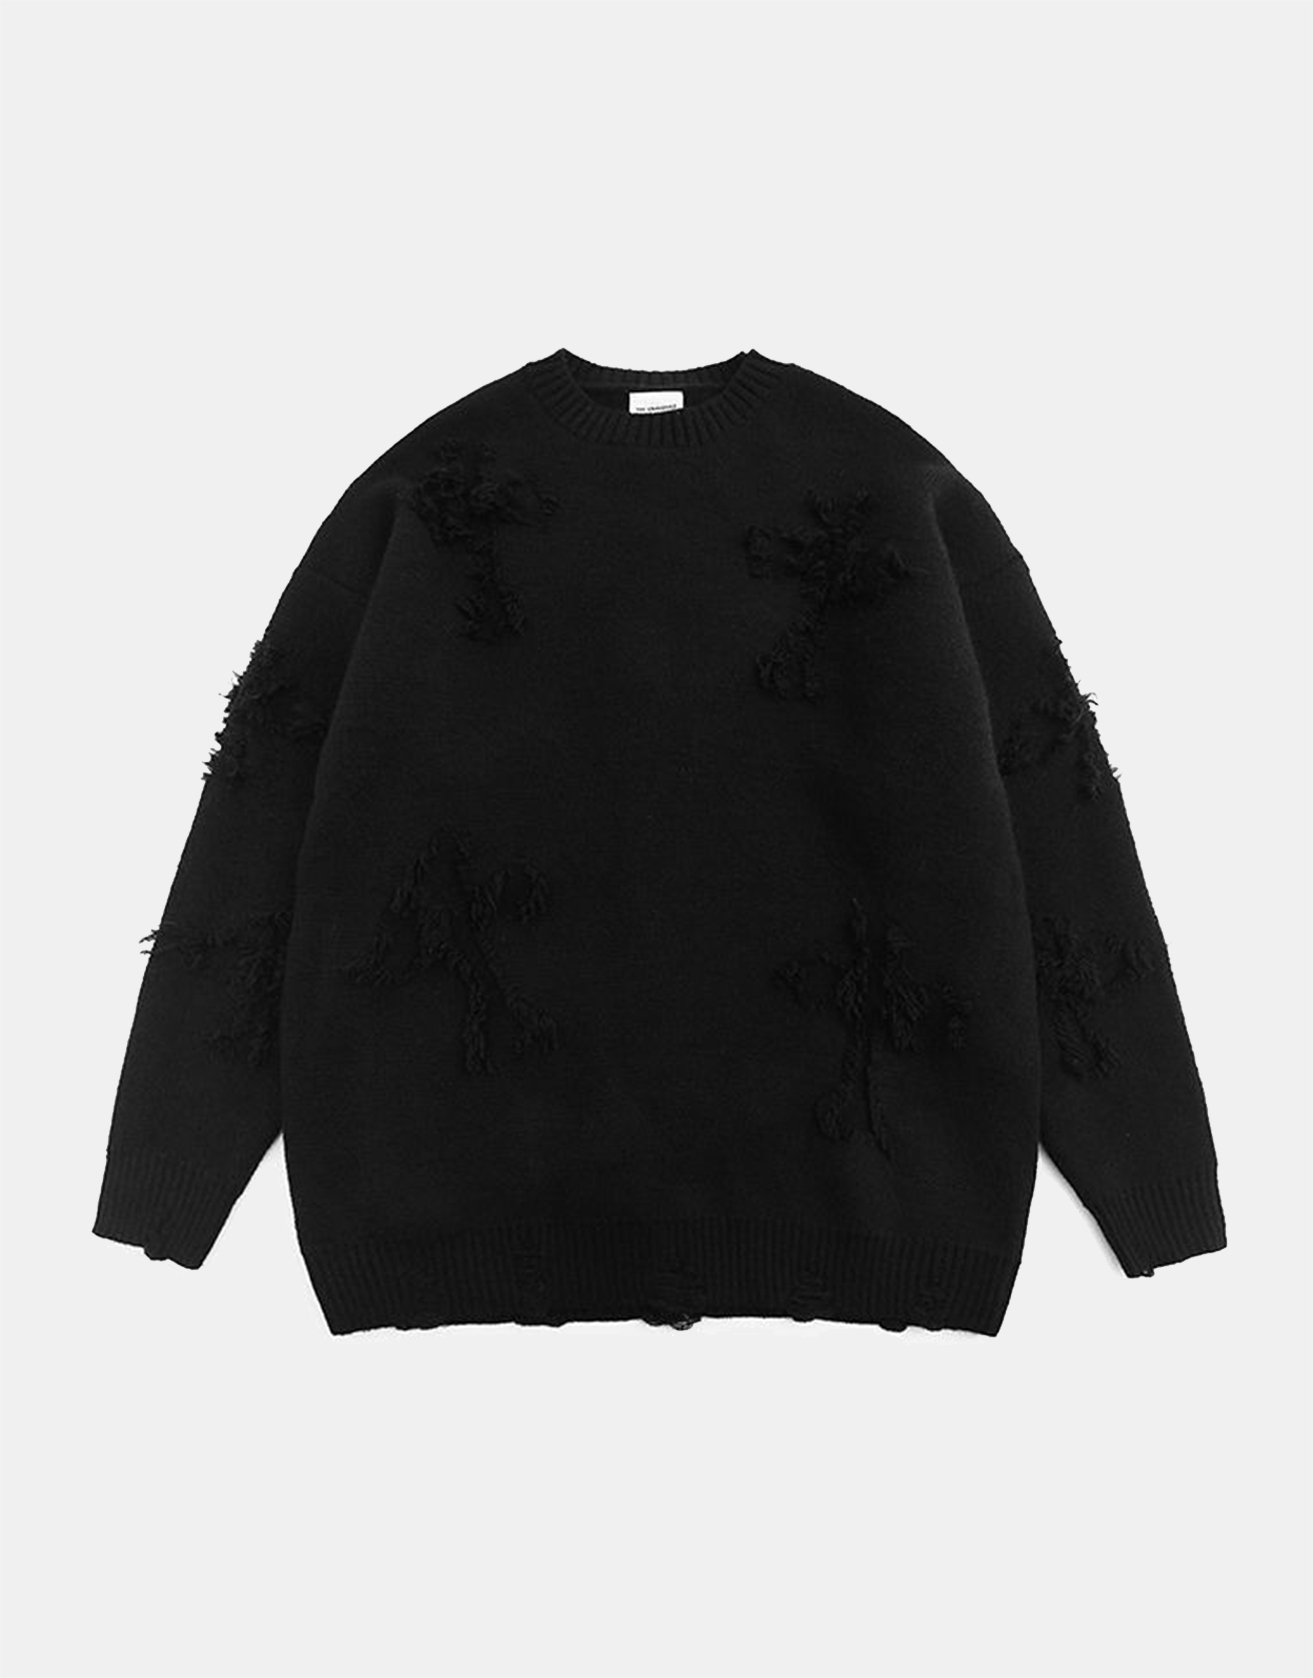 Cross Hole Street Trendy Sweater / TECHWEAR CLUB / Techwear